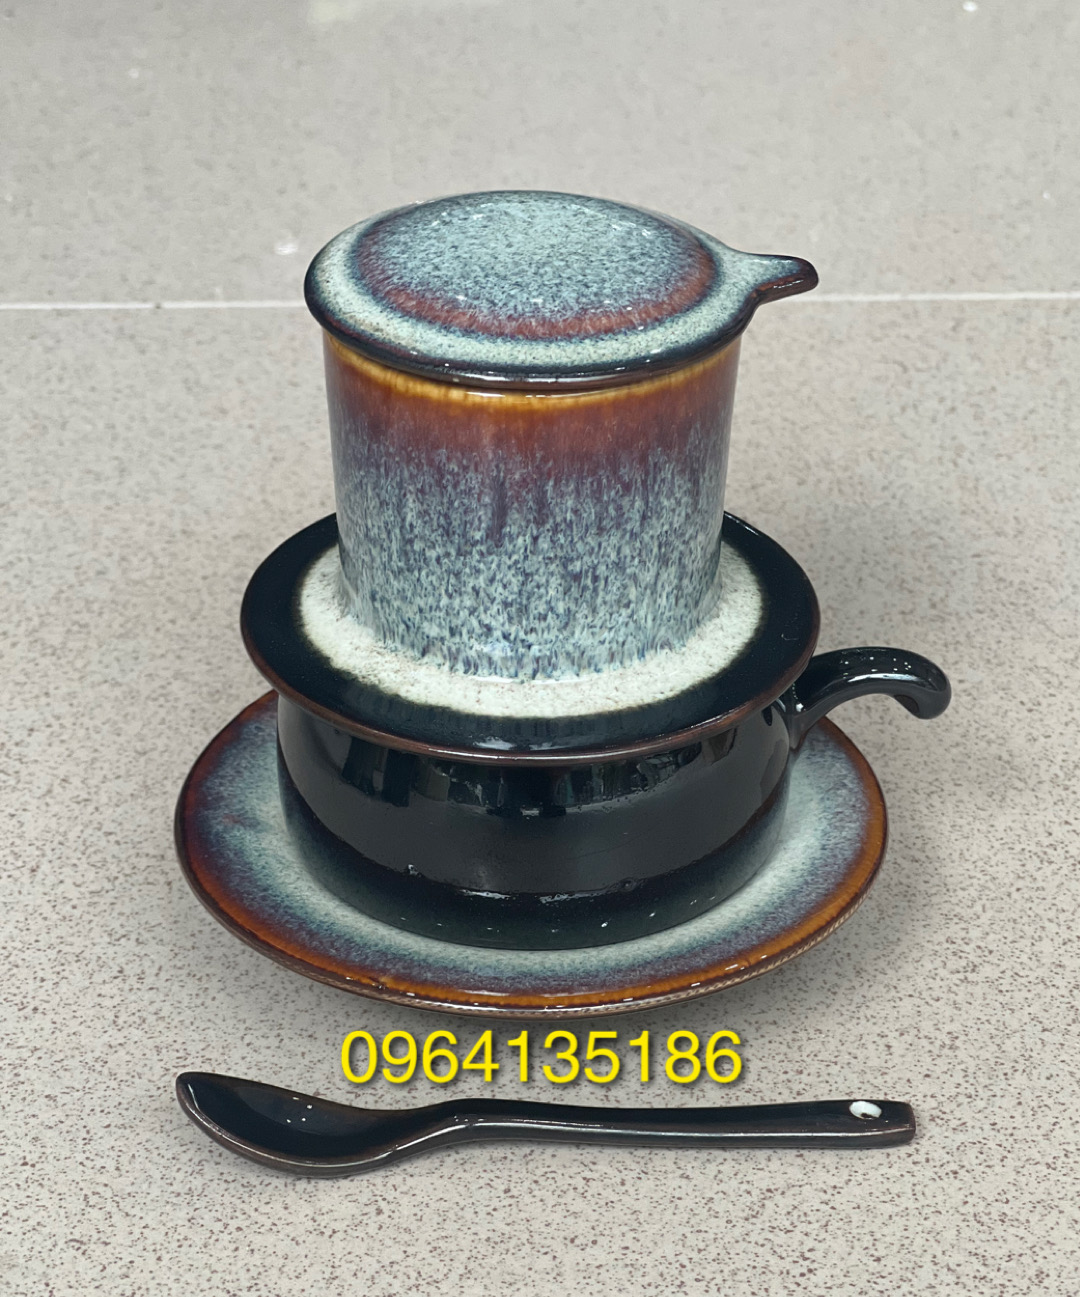 Bộ phin pha cà phê gốm sứ Bát Tràng men hoả biến trắng cao cấp,gồm mẫu phin tách đĩa lõm